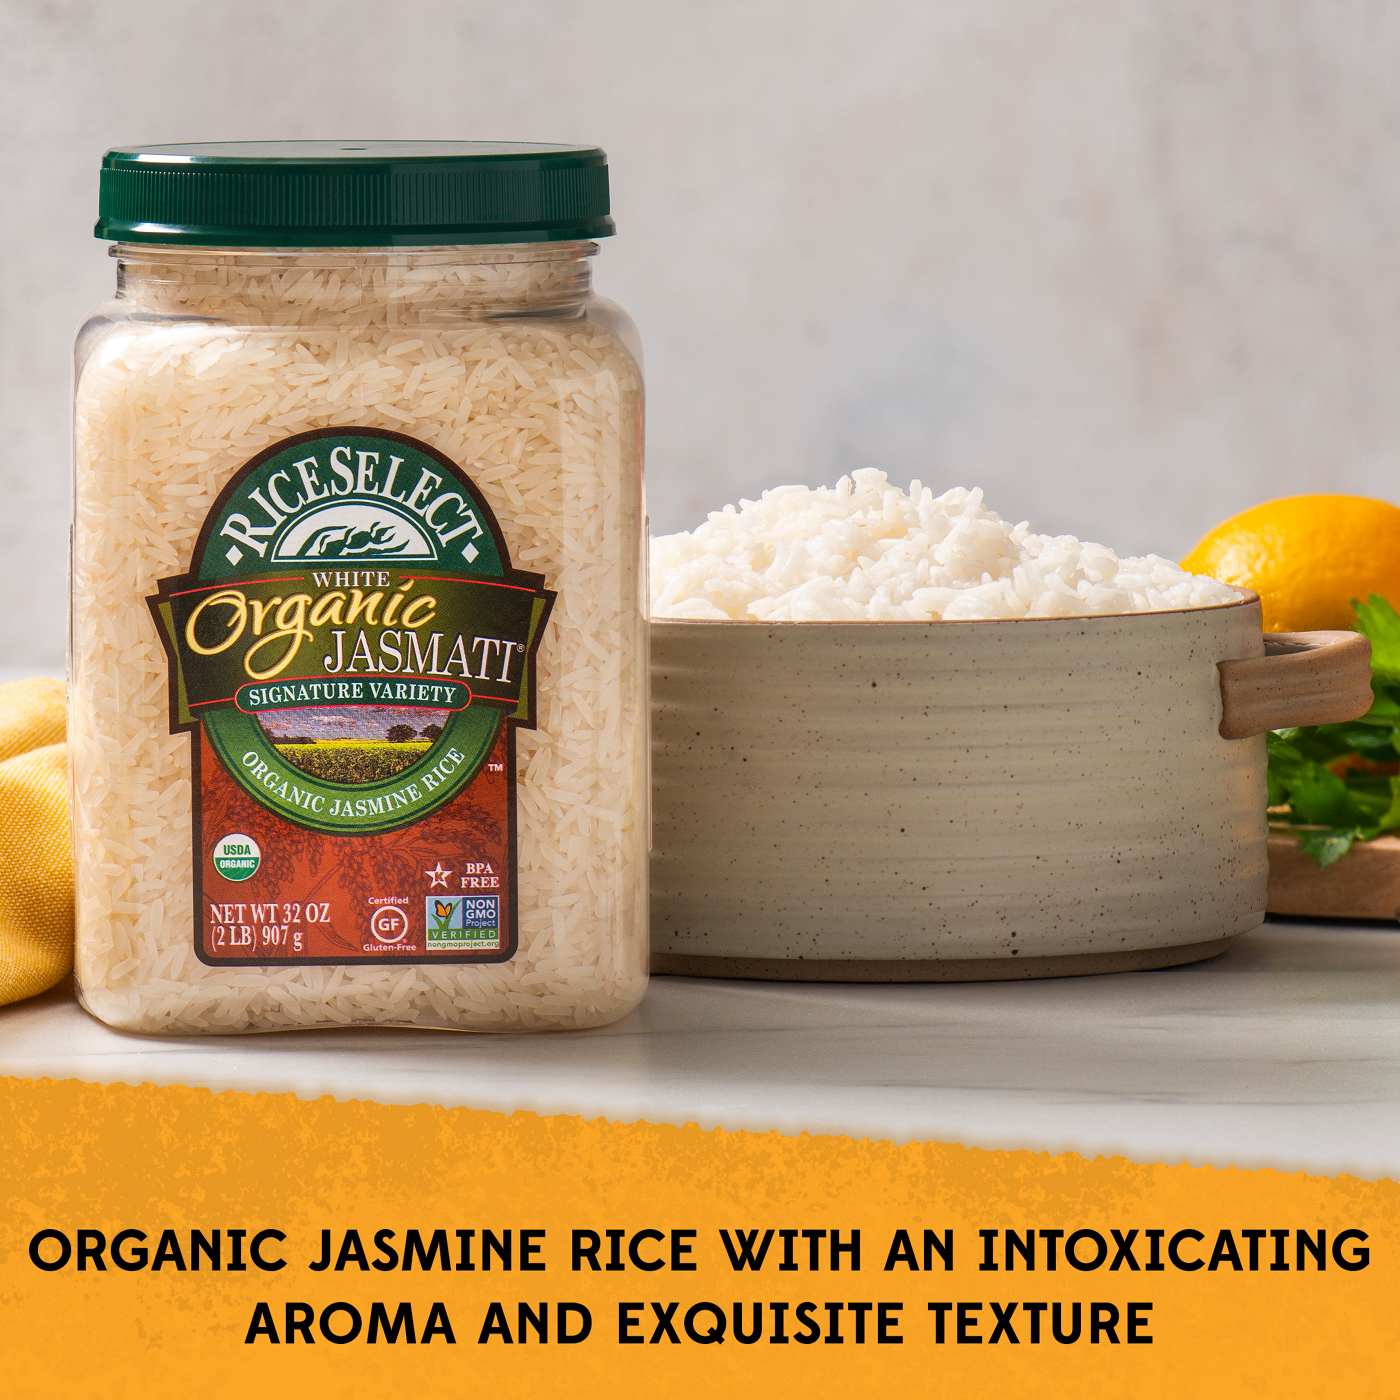 RiceSelect Organic Jasmati Rice; image 3 of 5